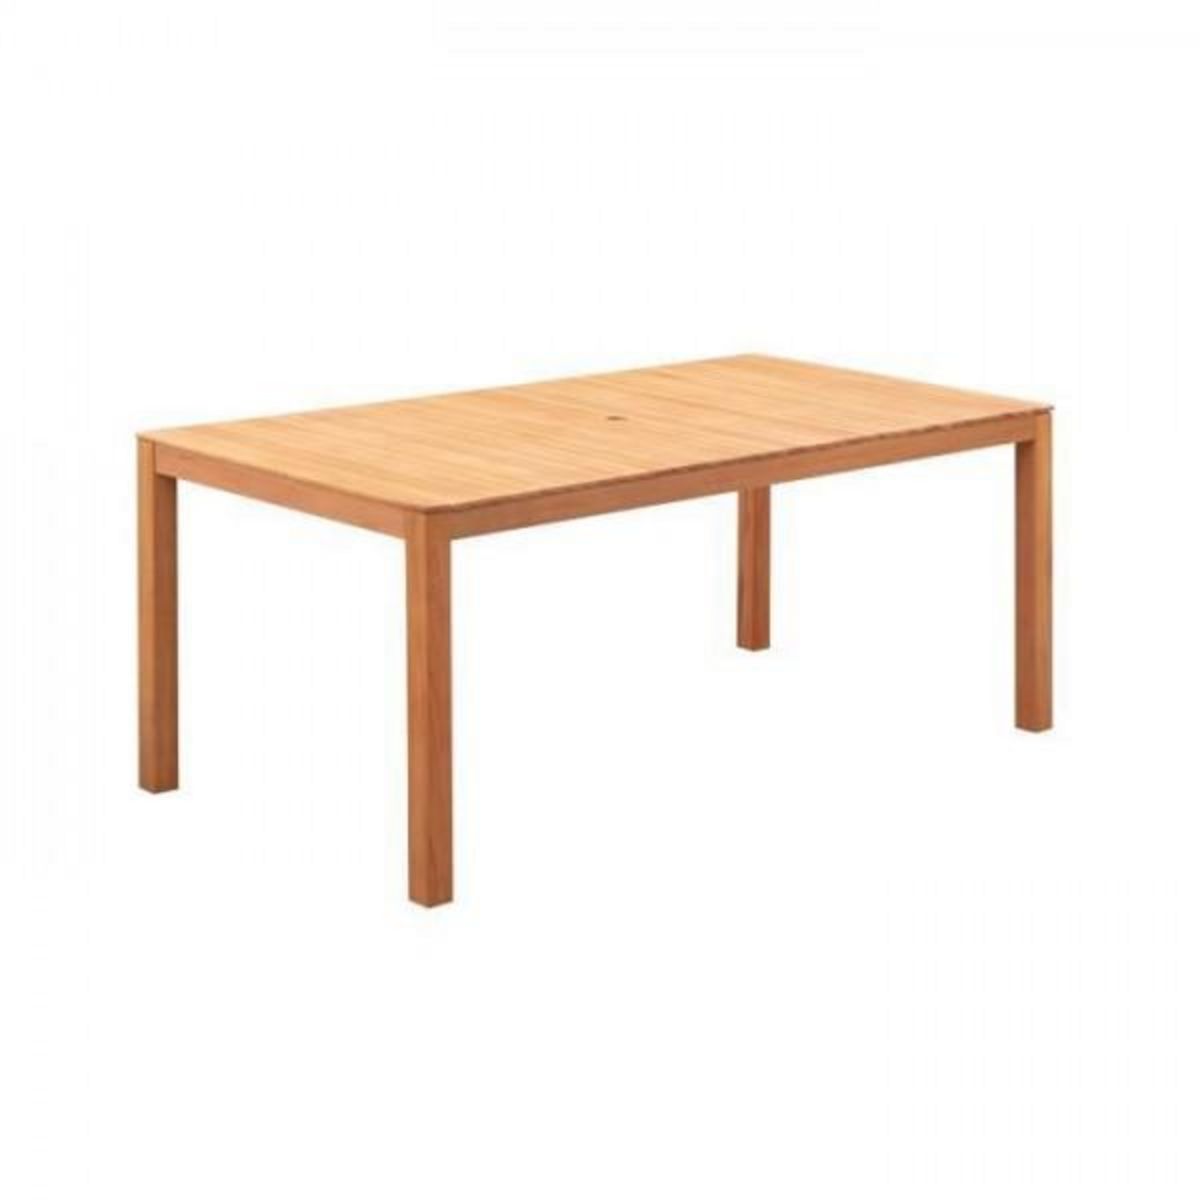 MARKET24 Table de jardin 6-8 personnes - 180 x 90 x H.74 cm - En bois d'acacia naturel